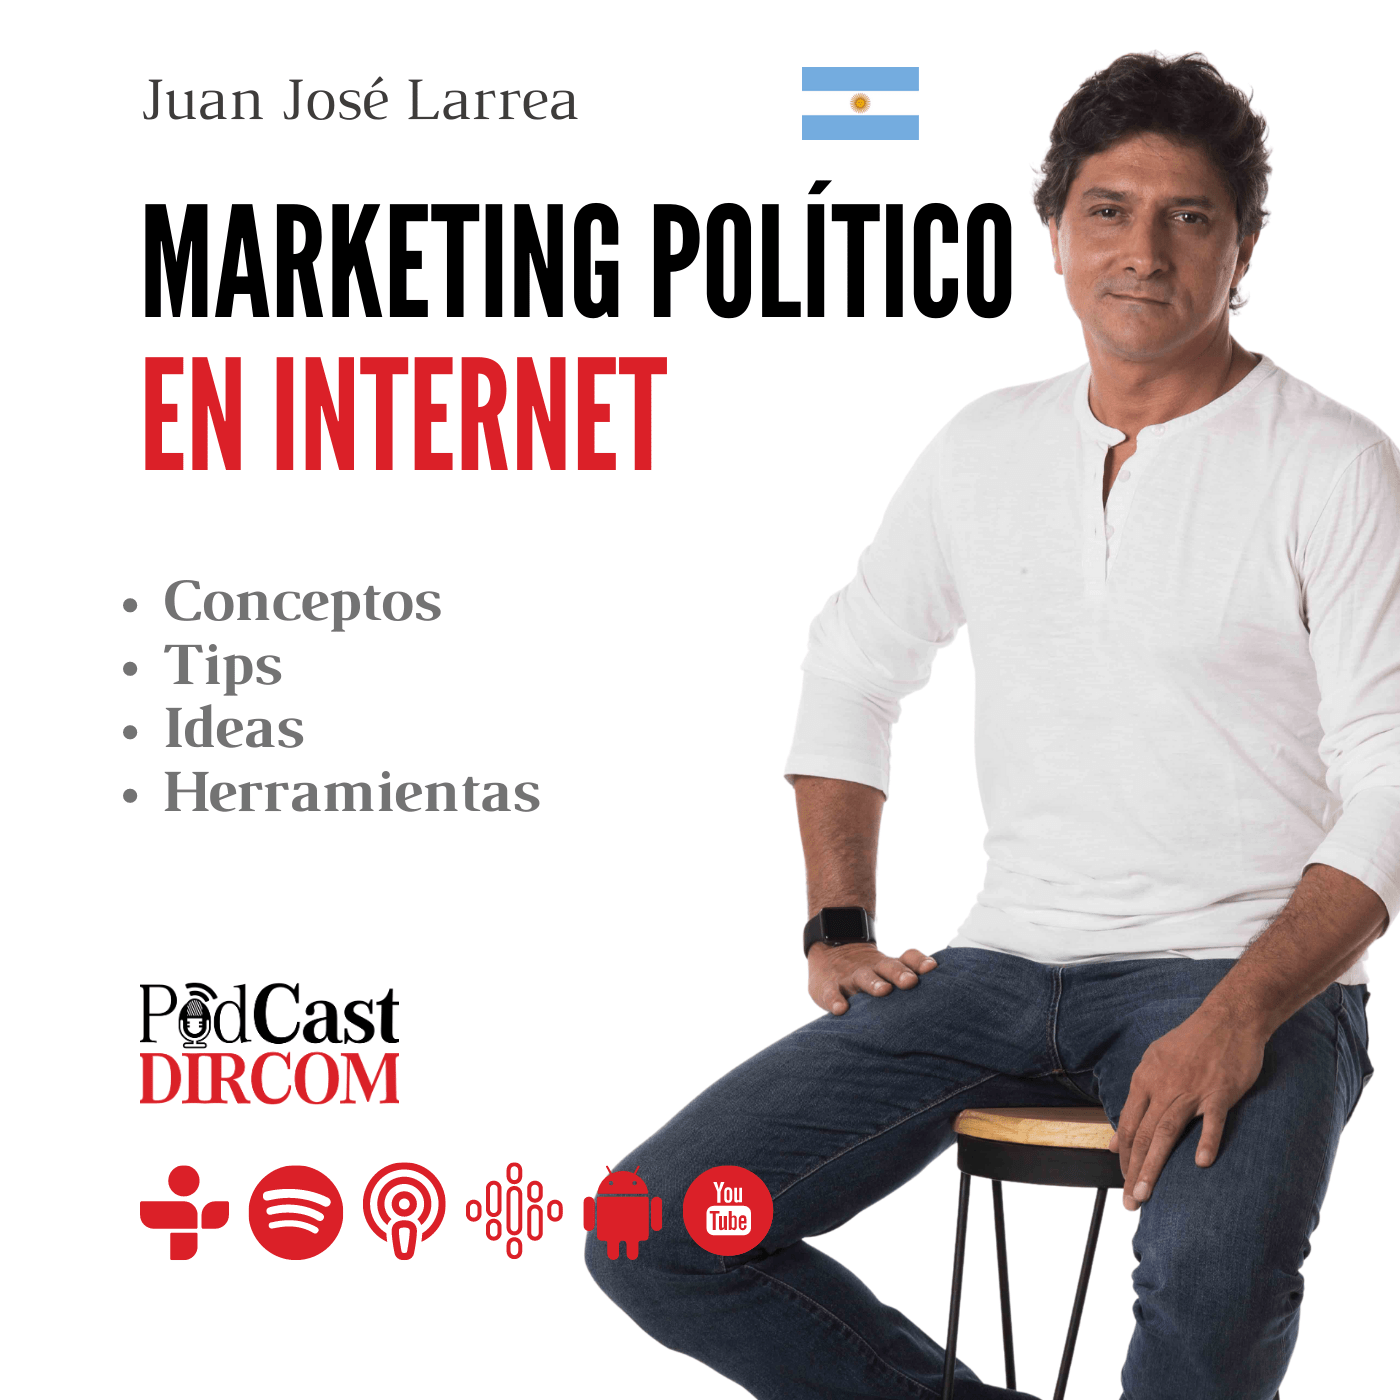 Marketing Politico en Internet